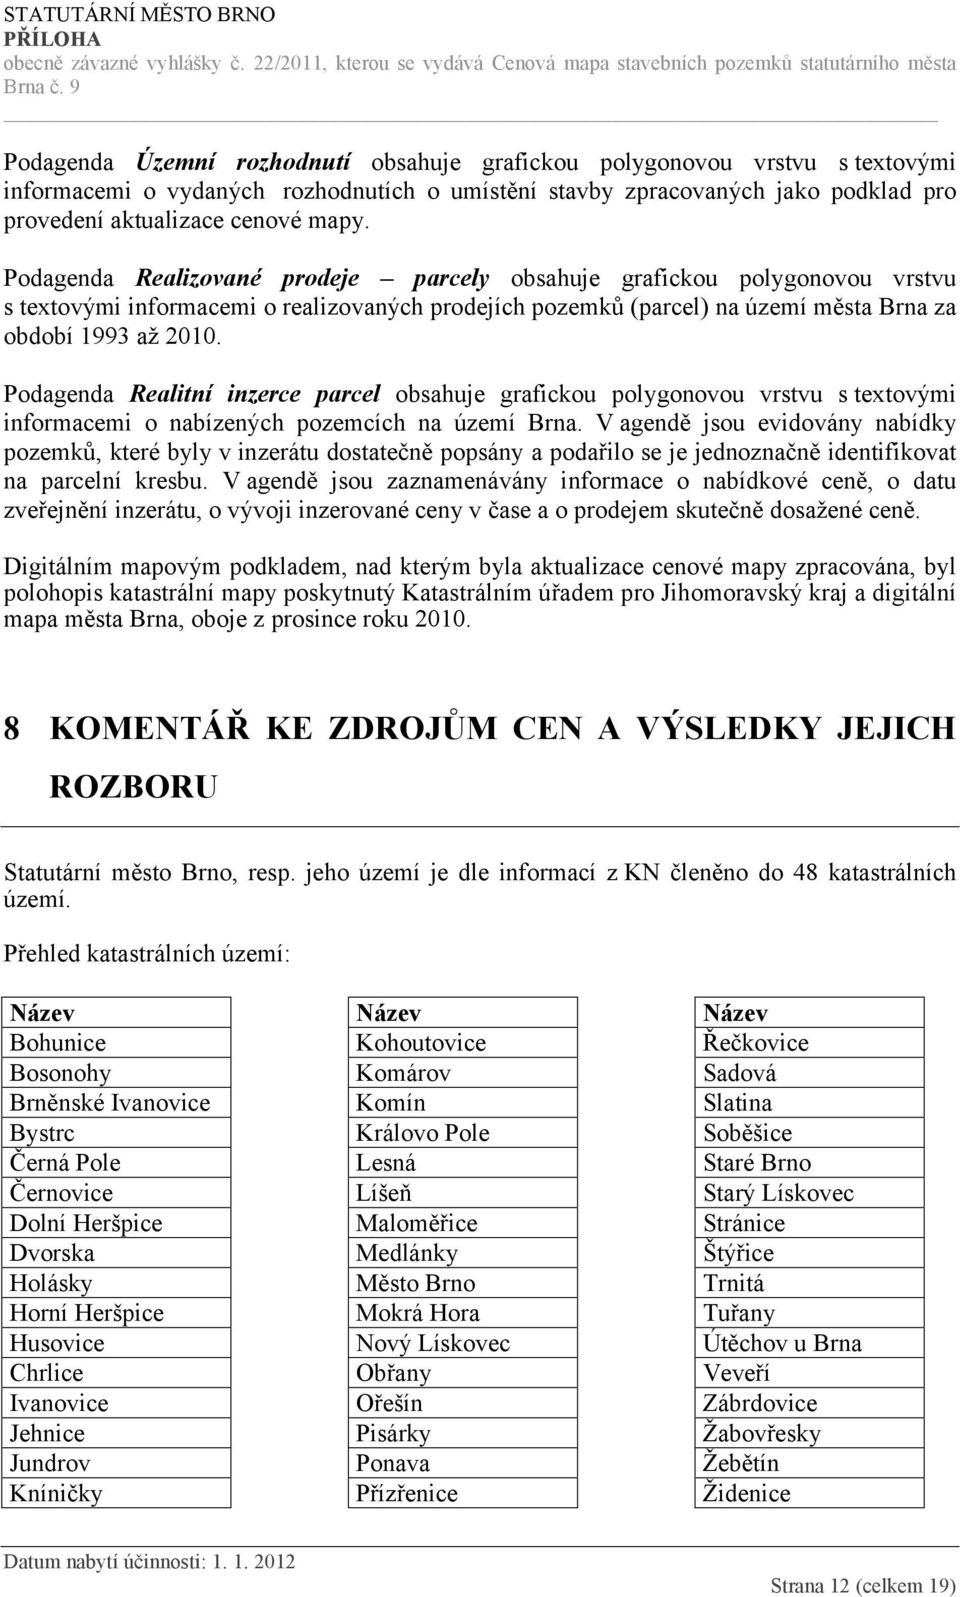 Podagenda Realitní inzerce parcel obsahuje grafickou polygonovou vrstvu s textovými informacemi o nabízených pozemcích na území Brna.